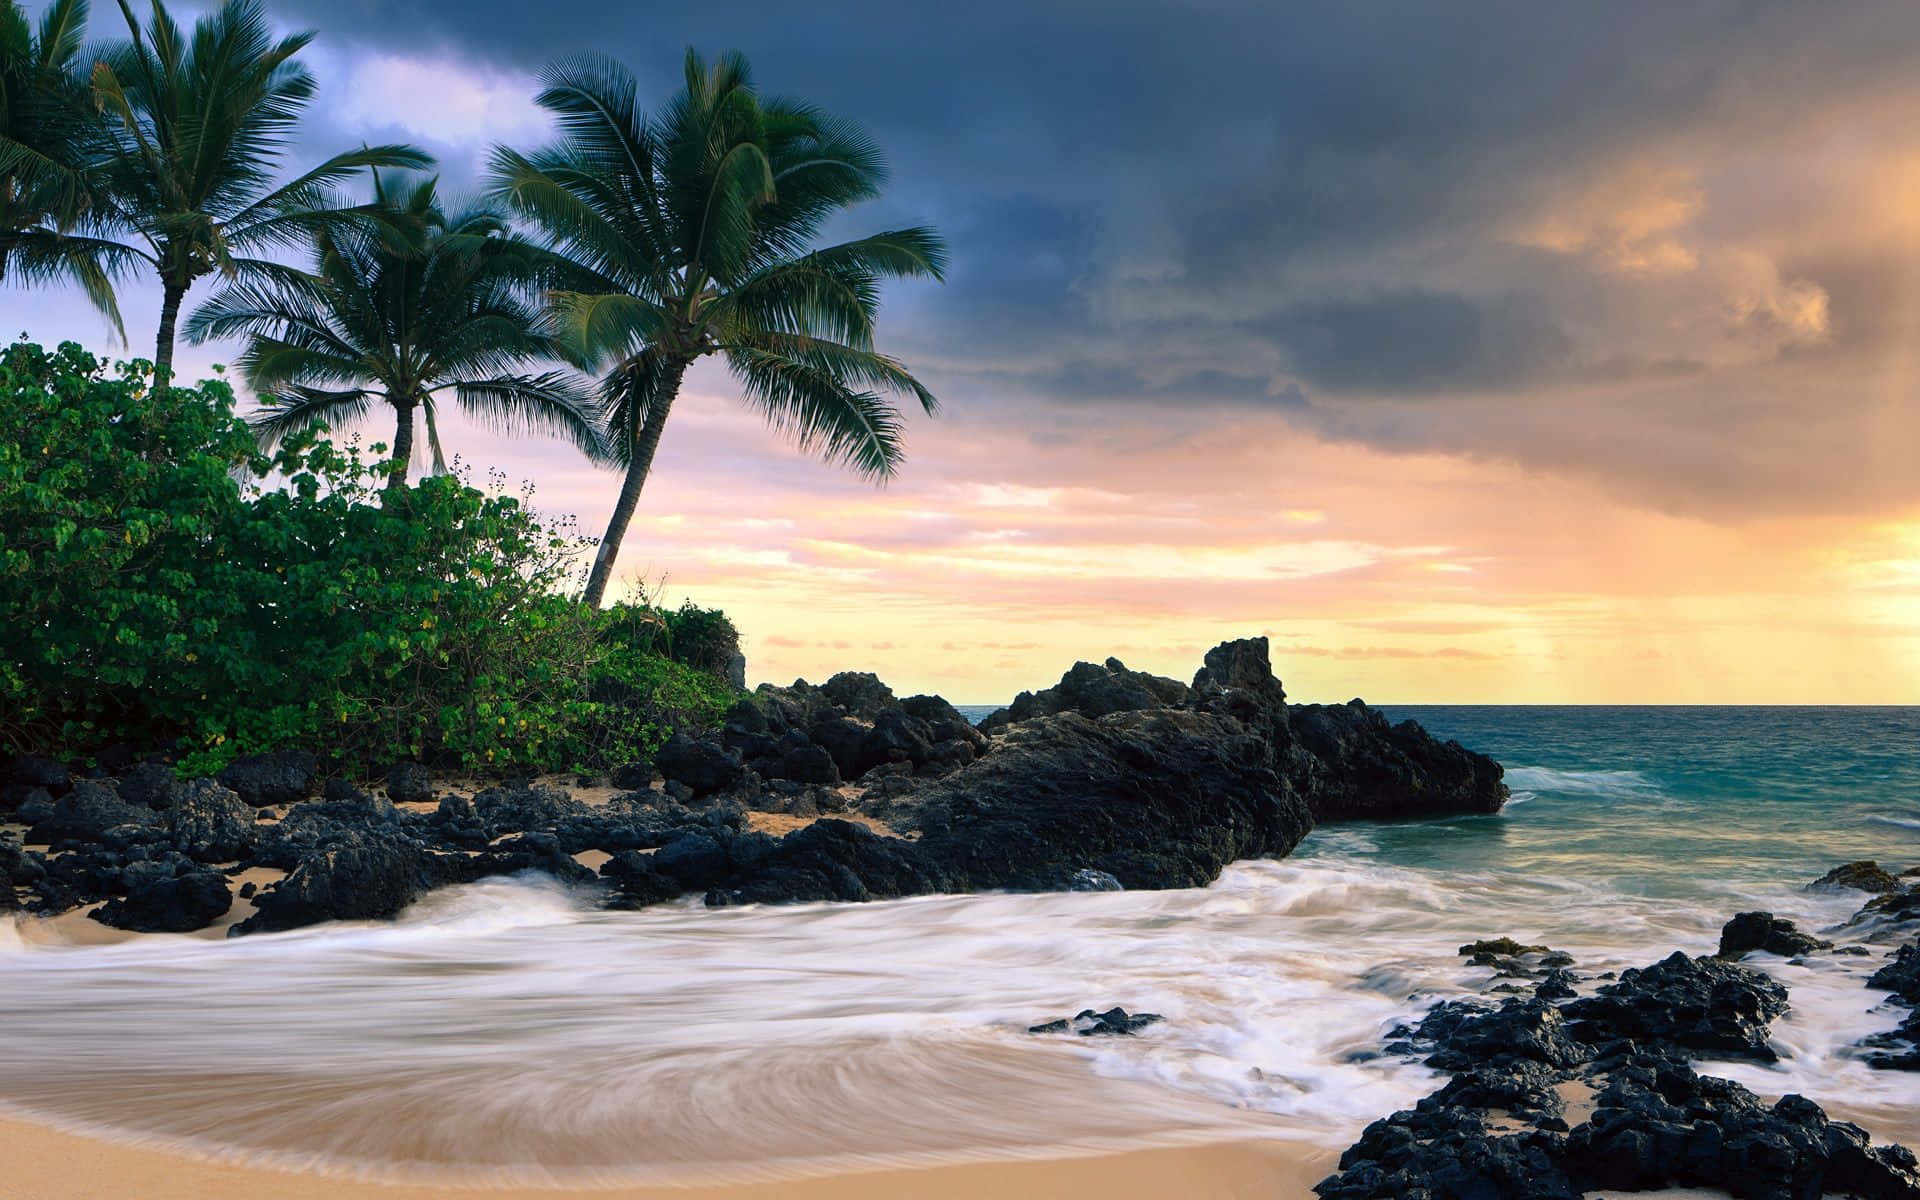 Tranquil Hawaiian Beach at Sunset Wallpaper